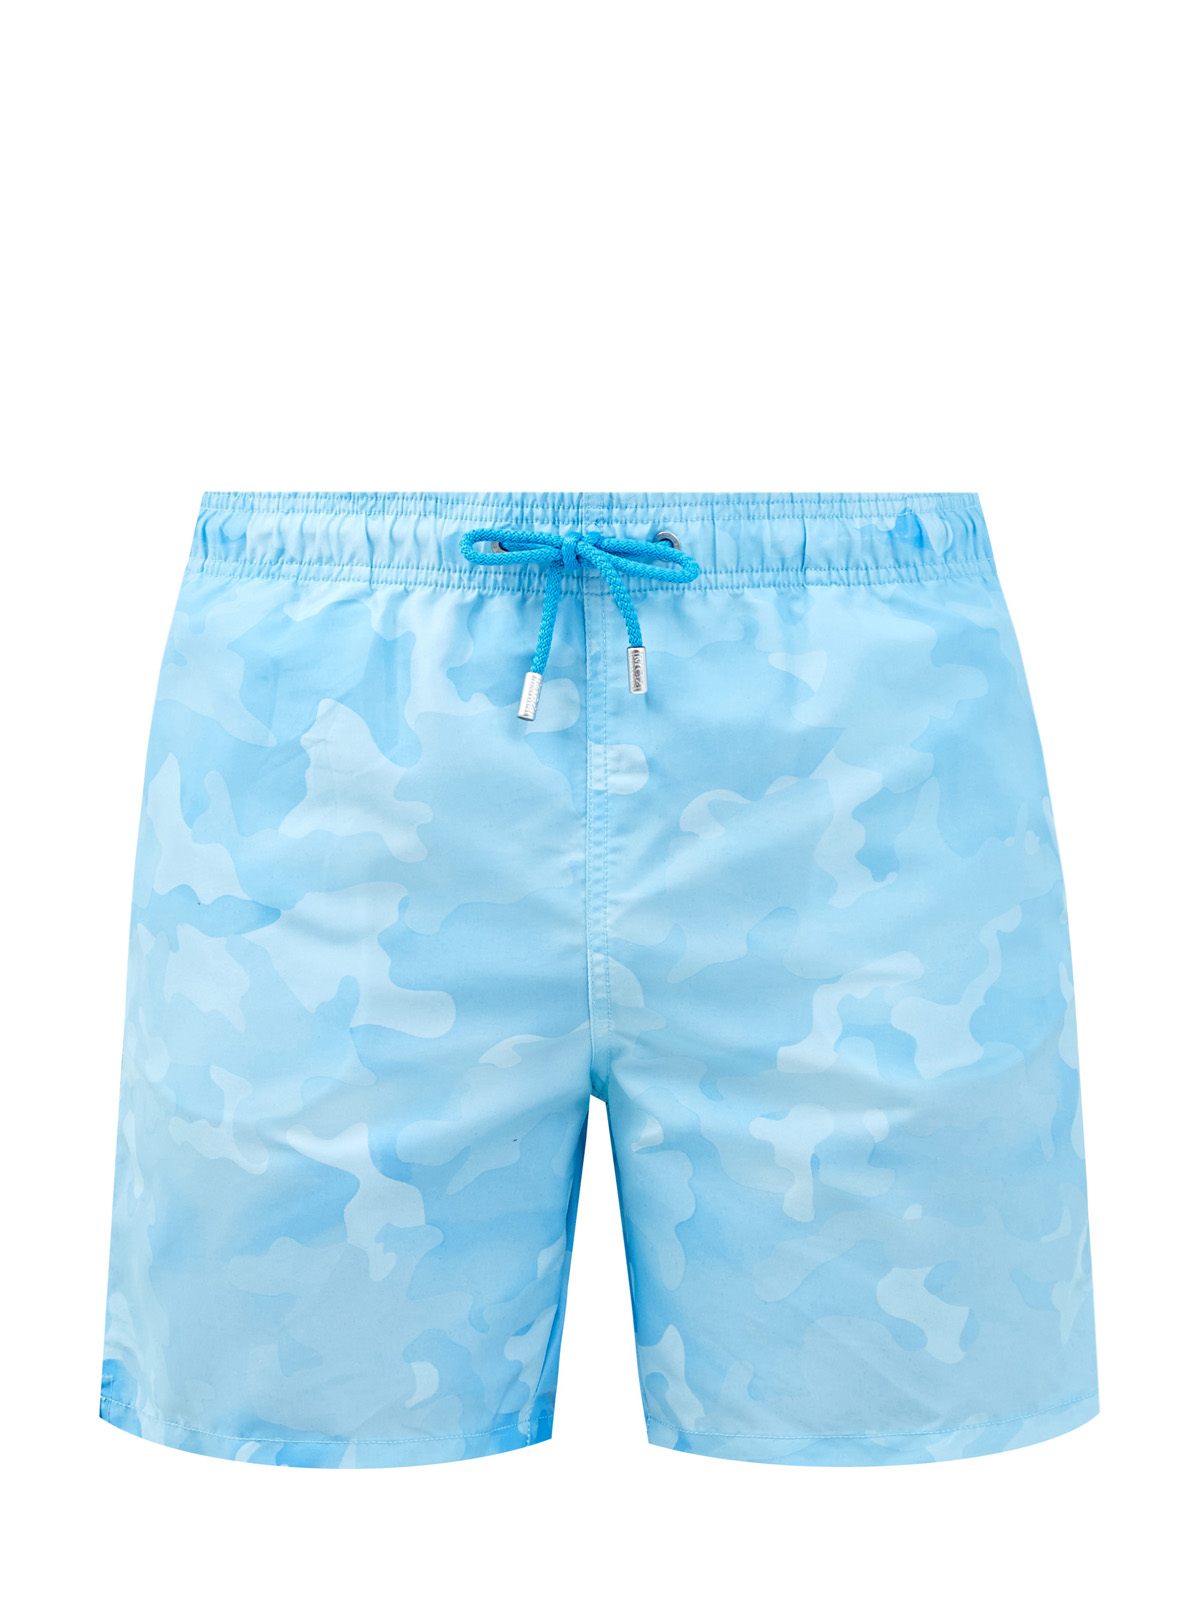 Плавательные шорты с камуфляжным принтом в голубых тонах MC2 SAINT BARTH, цвет голубой, размер M;XL;4XL